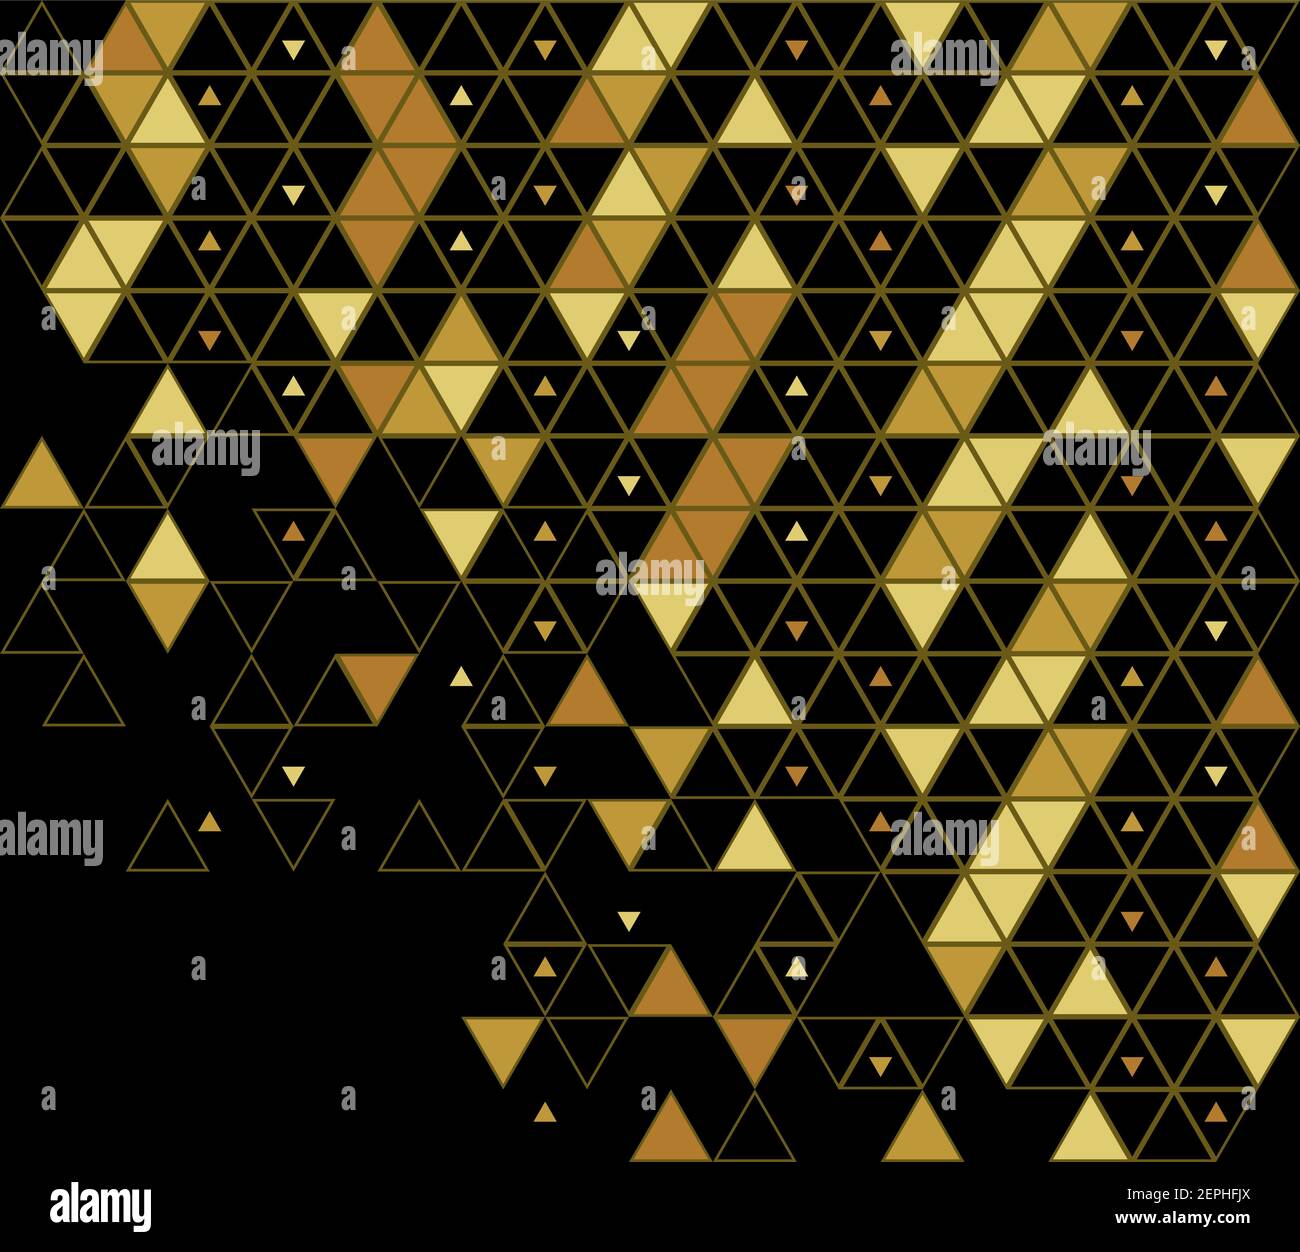 Schema vettoriale geometrico astratto immagine rovinata. Oro e nero, grana griglia triangoli grande e piccola. Illustrazione Vettoriale